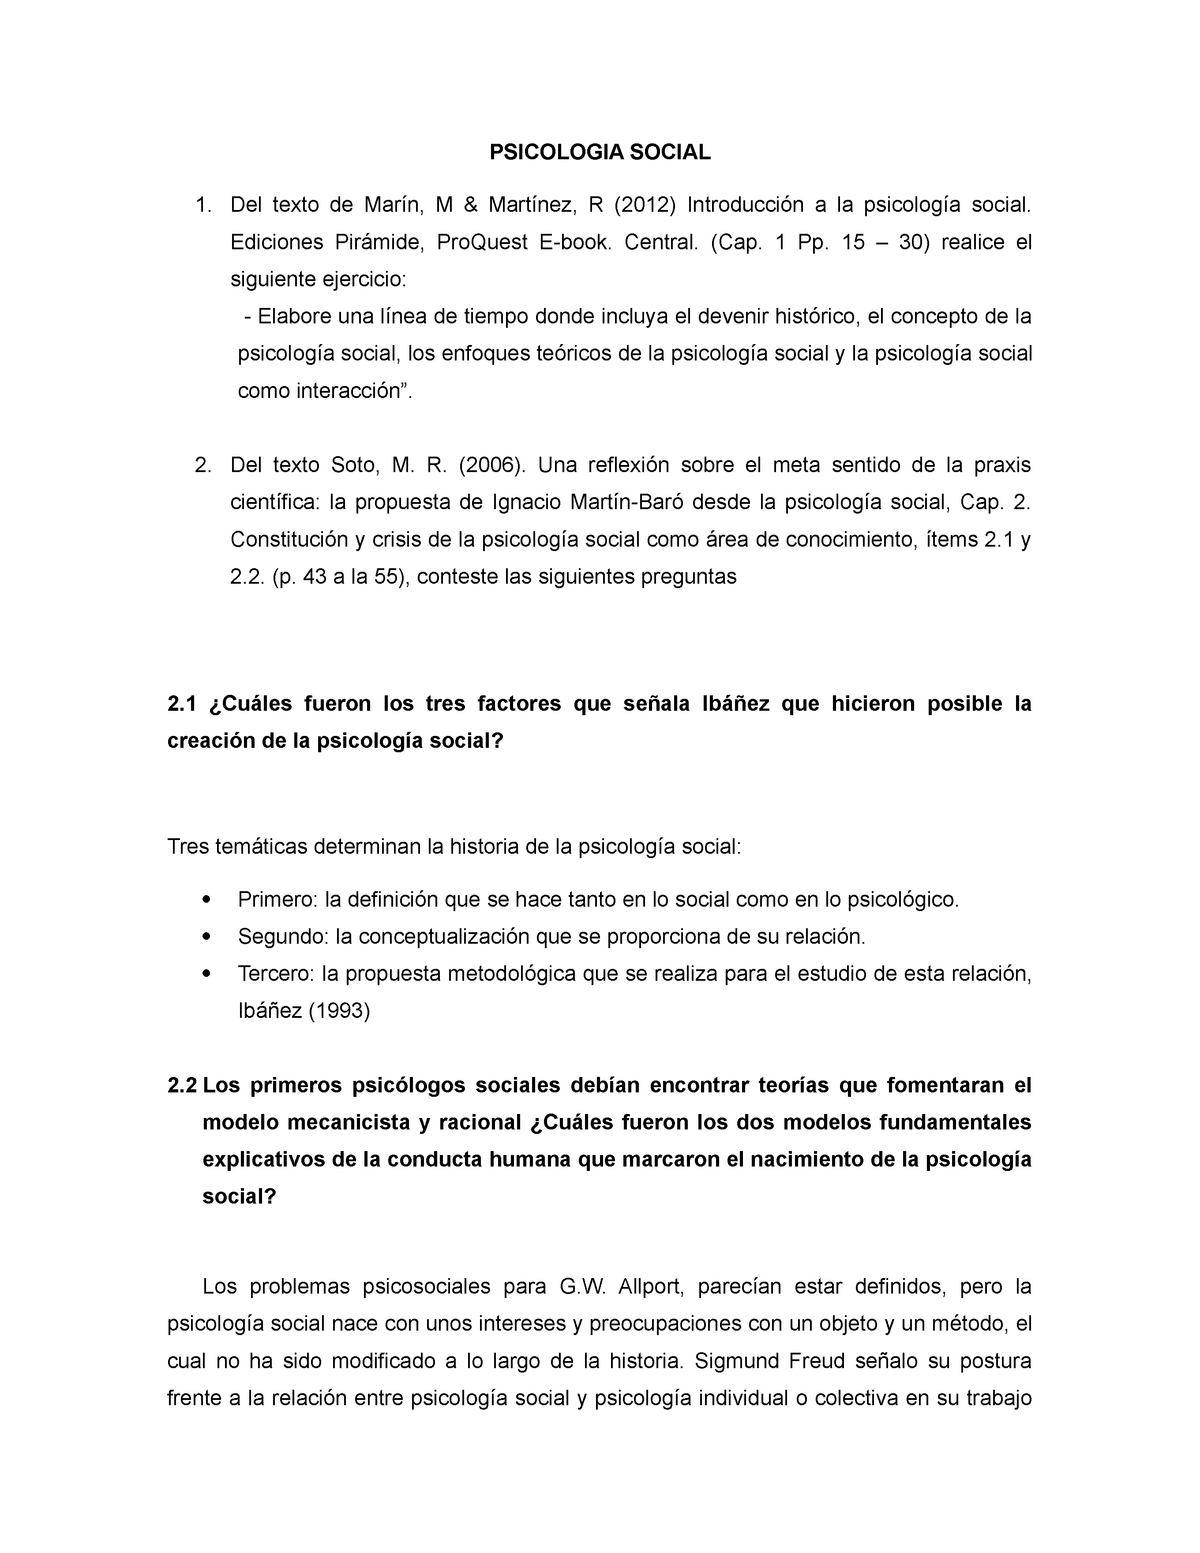 Fase 2- histroria y corrientes de la psicologia social - PSICOLOGIA SOCIAL  Del texto de Marín, M - Studocu